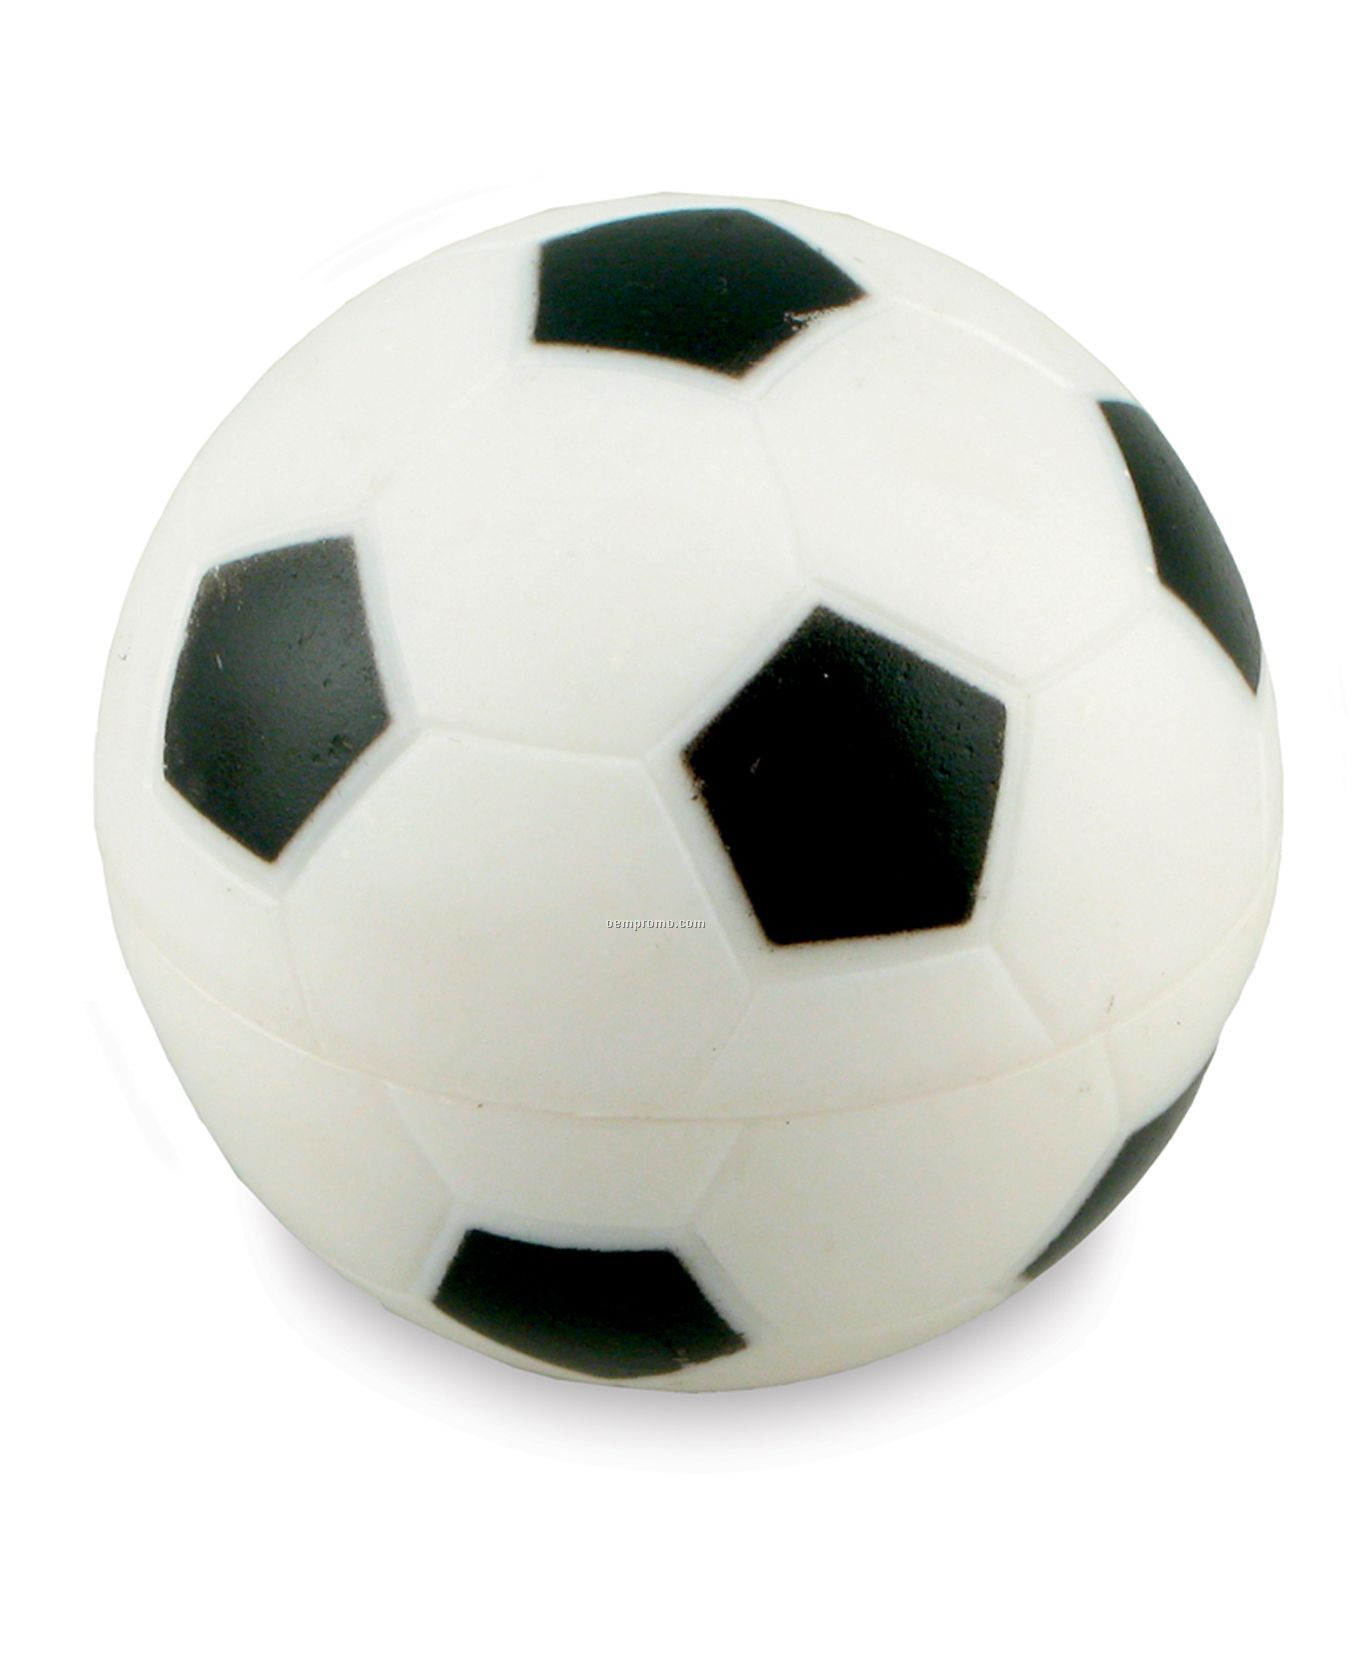 Soccer Ball Spf 15 Lip Balm (Peppermint Flavor)